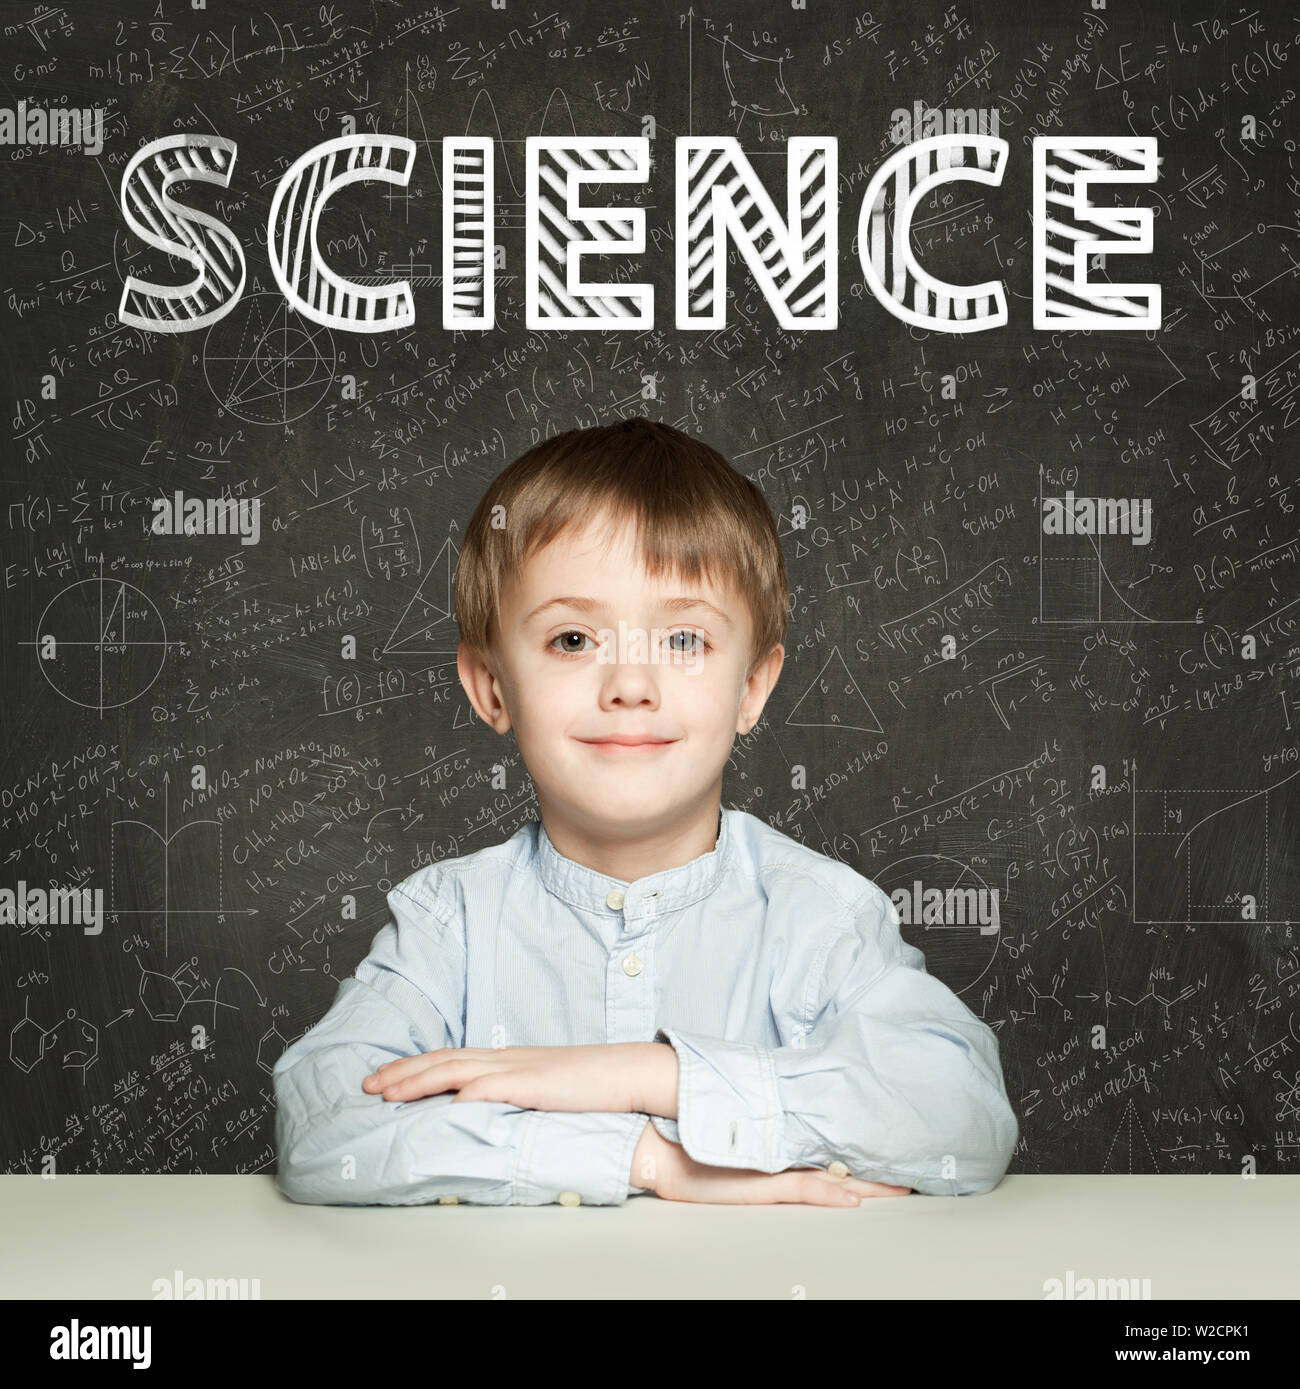 Lernen Wissenschaft. Clever student Kind auf blackboard Hintergrund mit mathematischen Formeln Stockfoto